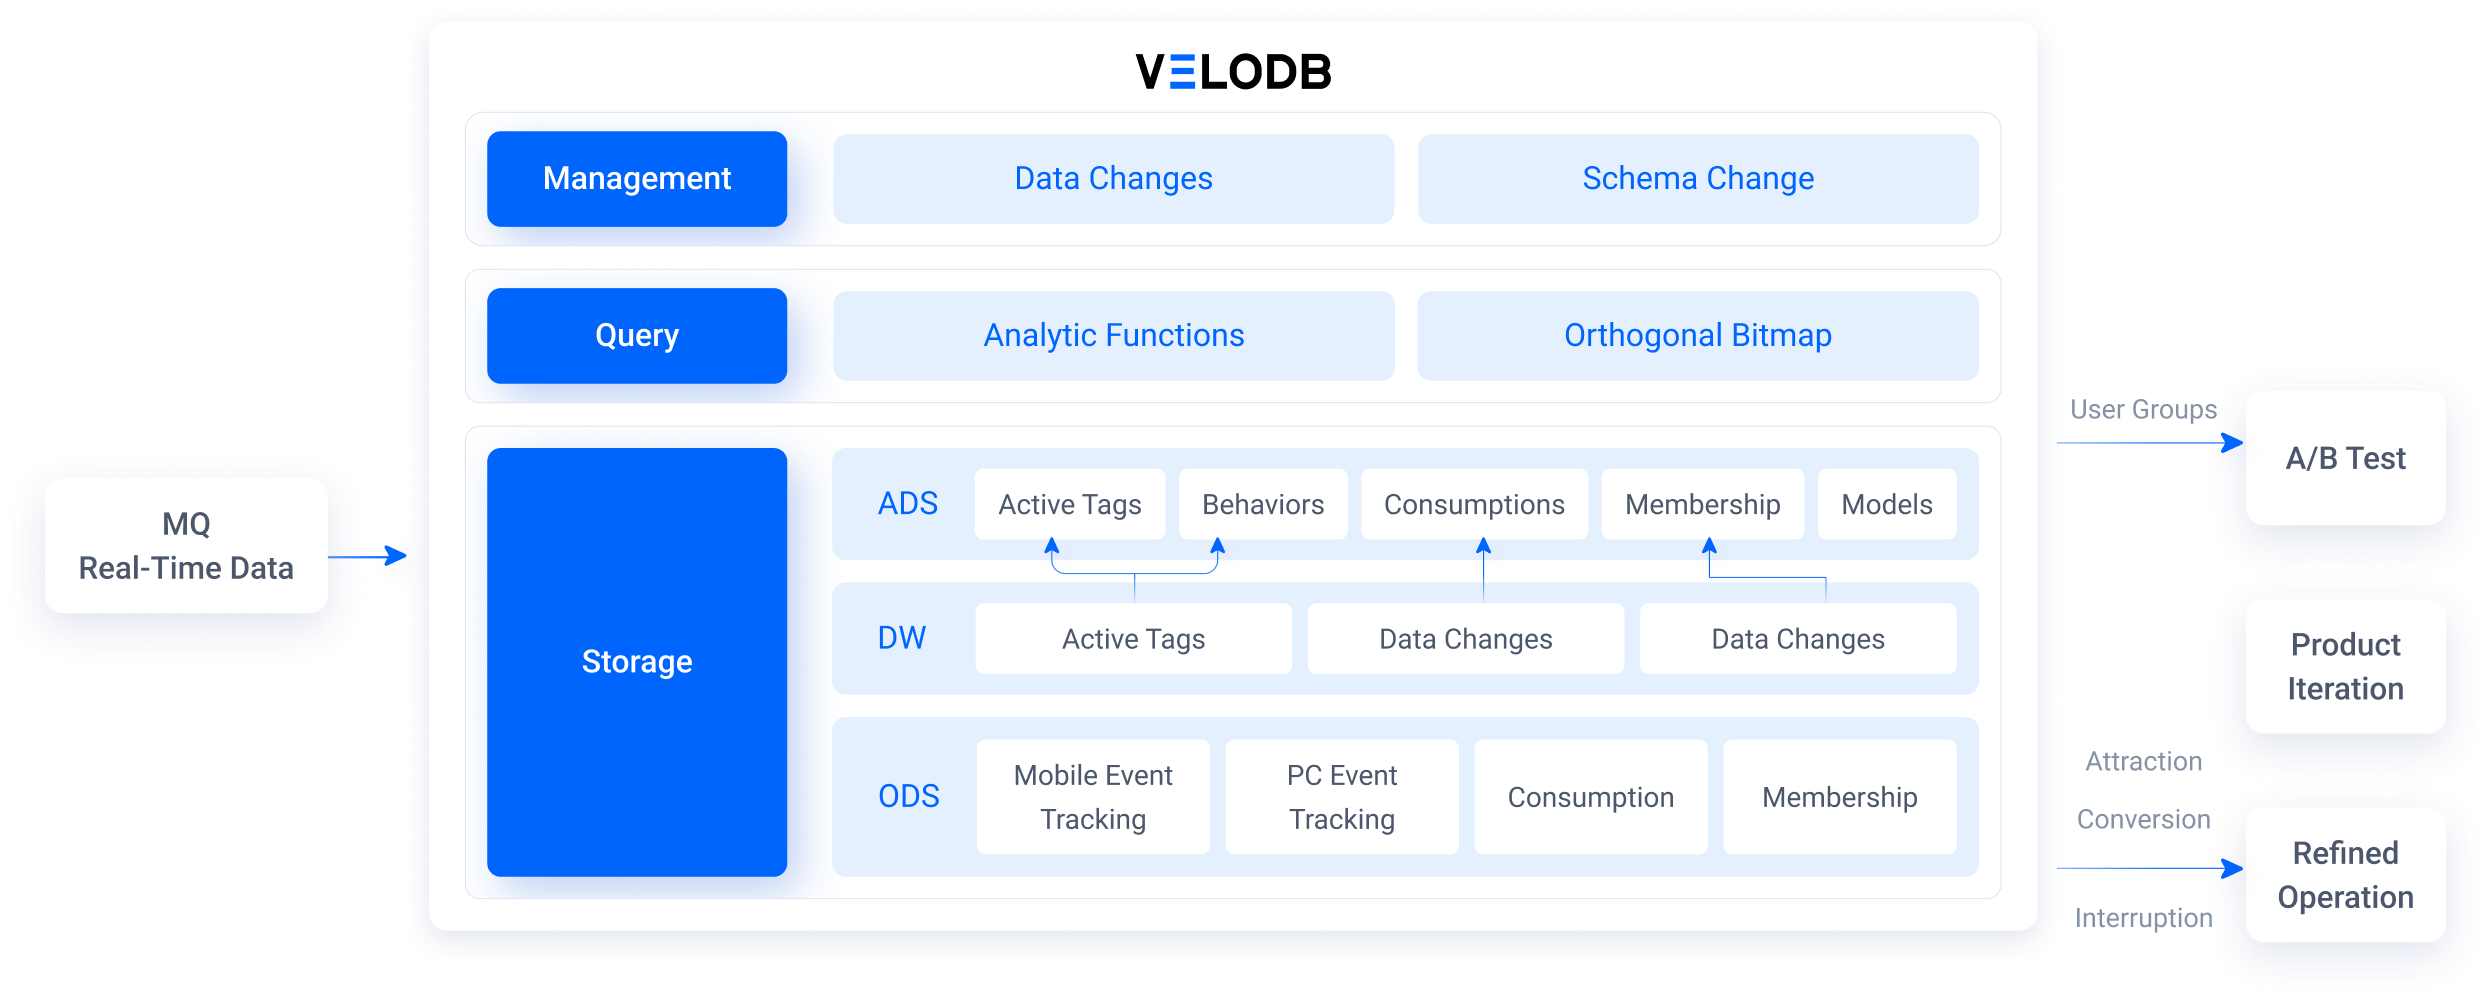 VeloDB-based customer data platform